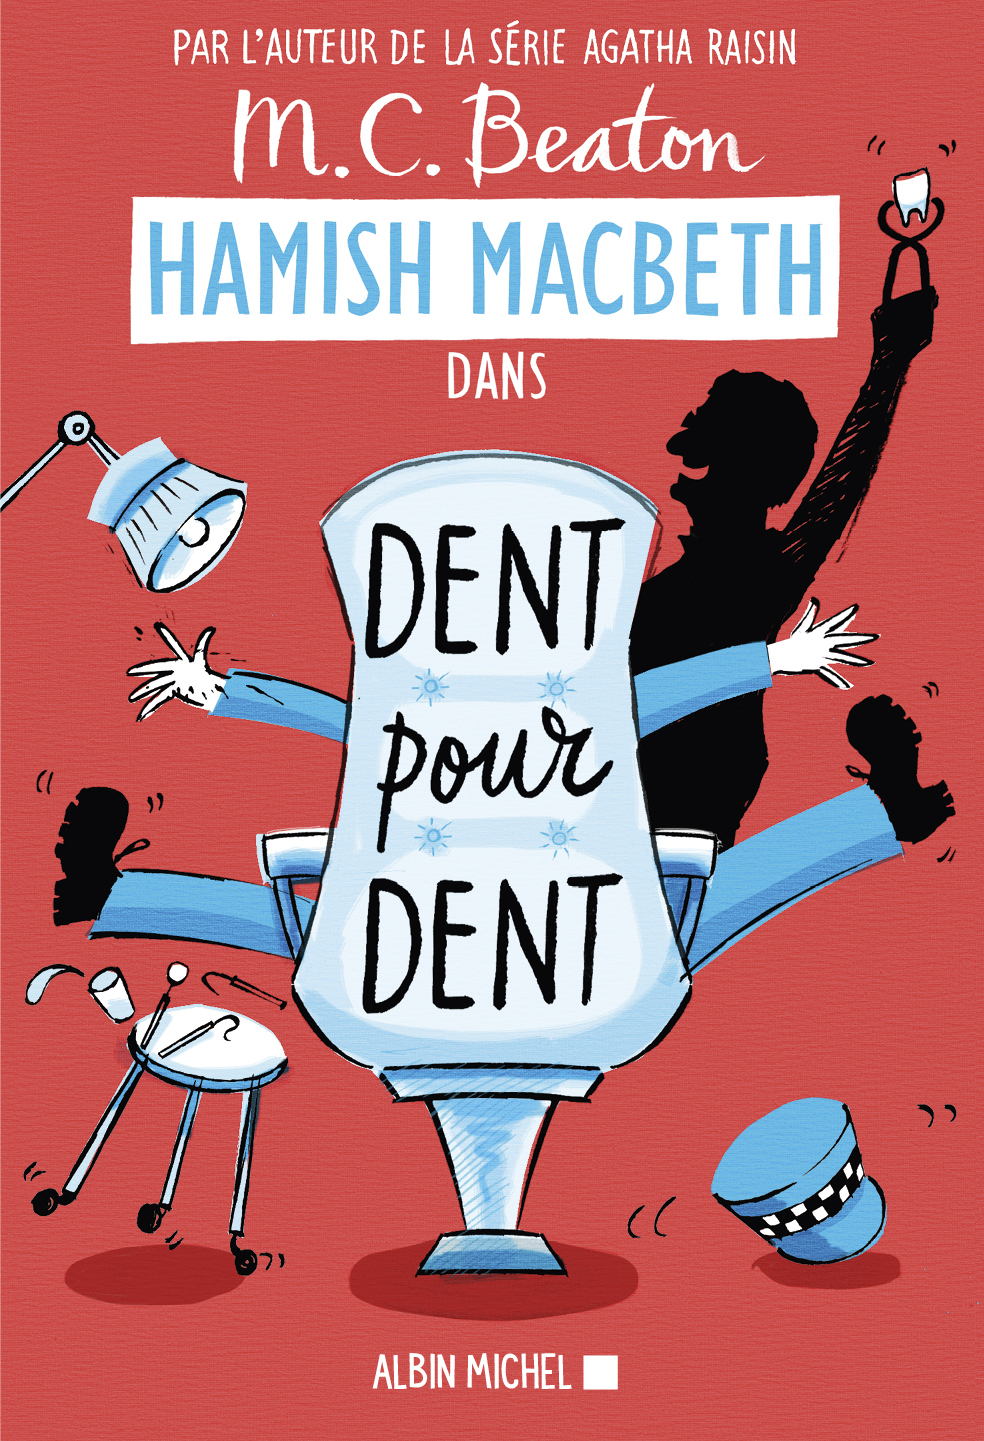 Couverture du livre Hamish Macbeth 13 - Dent pour dent